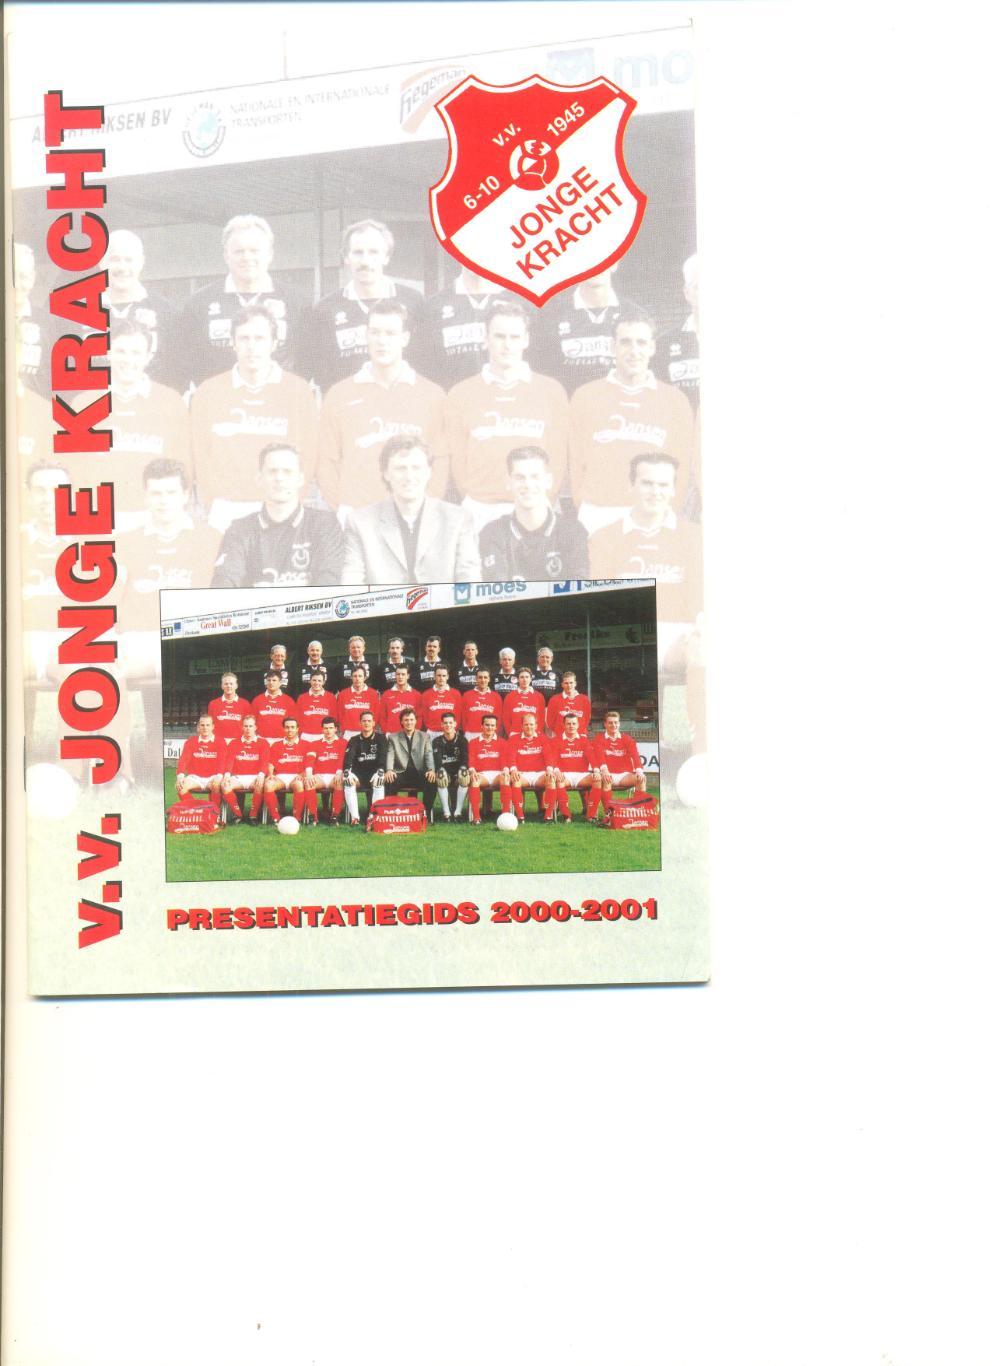 Календарь справочник клуба Йянге крахт(Нидерланды) 2000-2001 г.г. 32 стр.